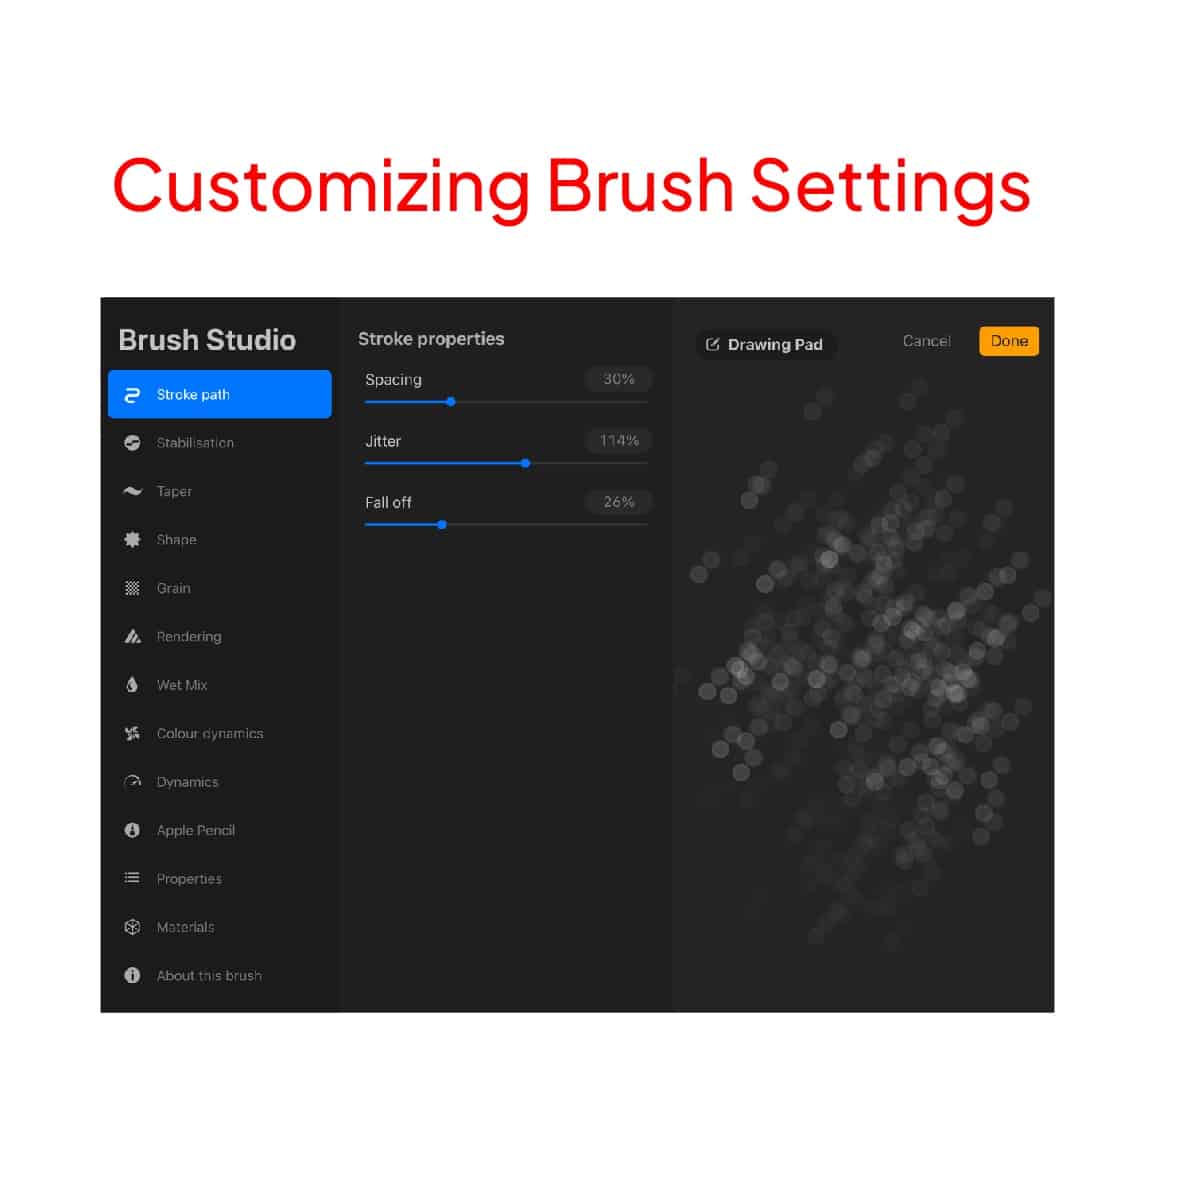 Customizing brush settings